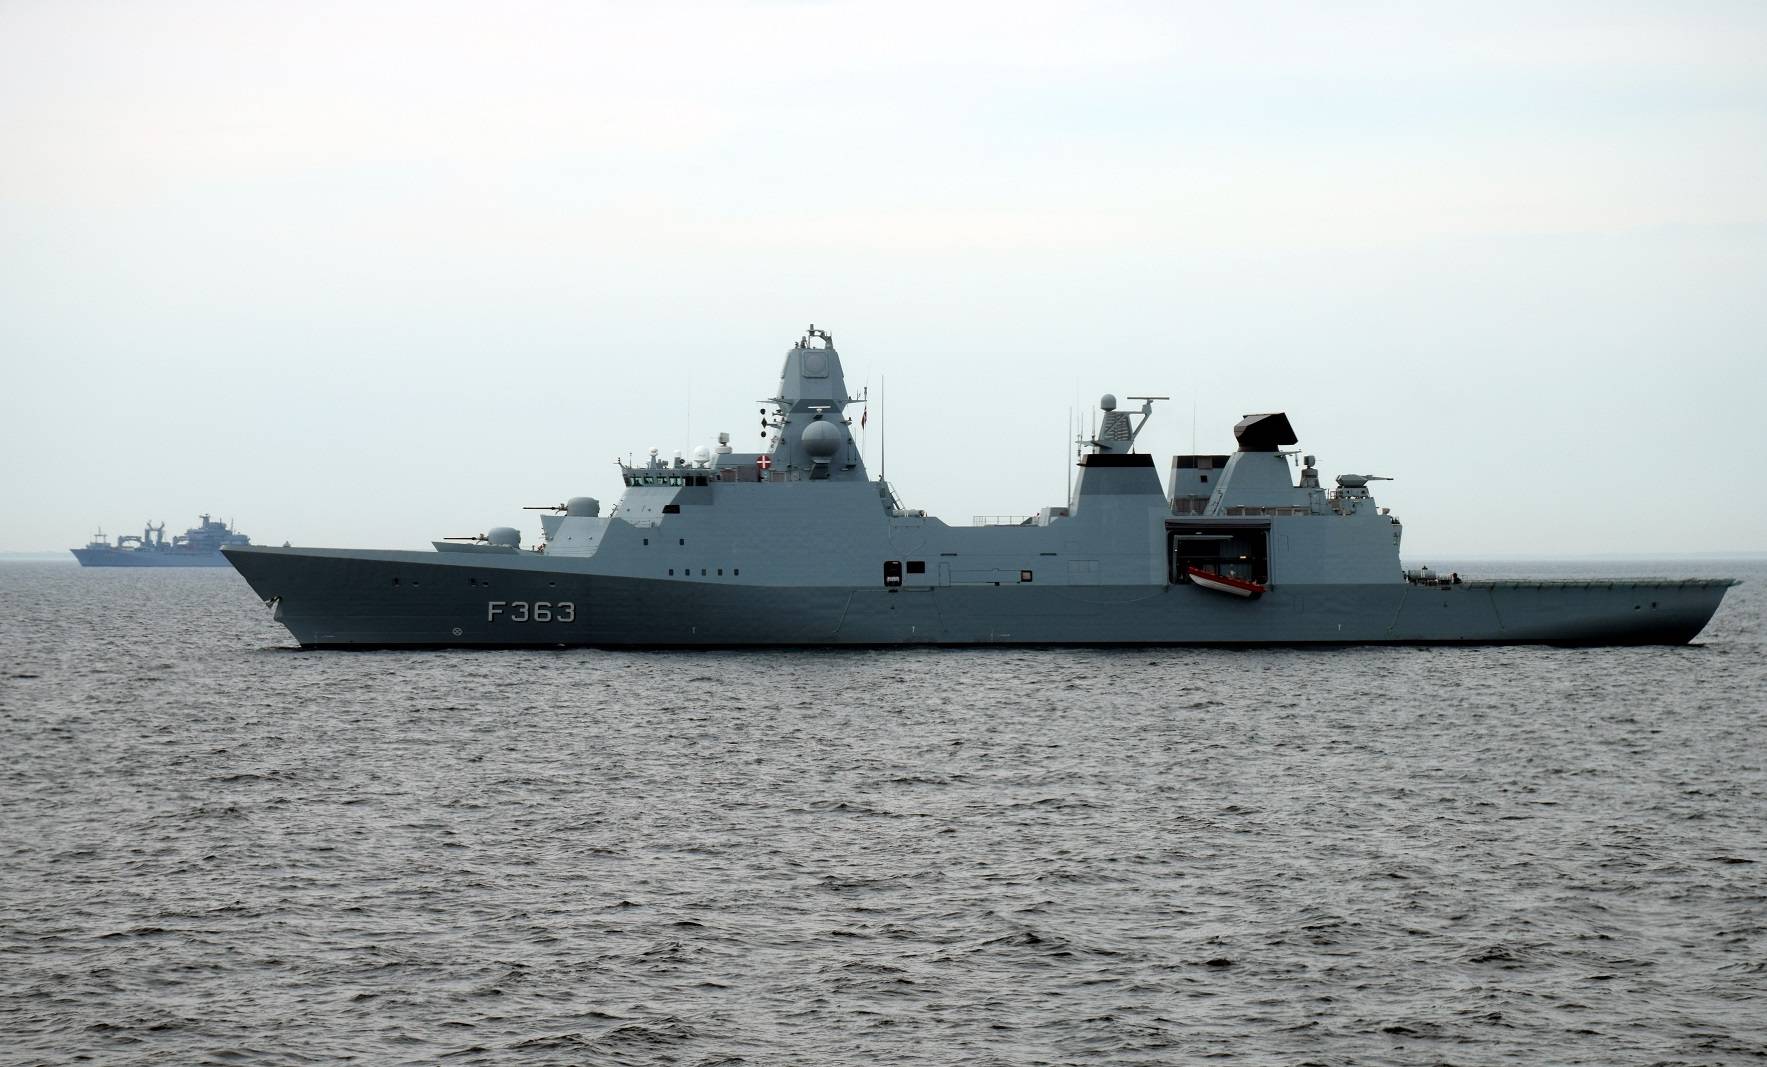 原创英国最新护卫舰即将开工,单价2.5亿英镑,照抄丹麦主力战舰图纸